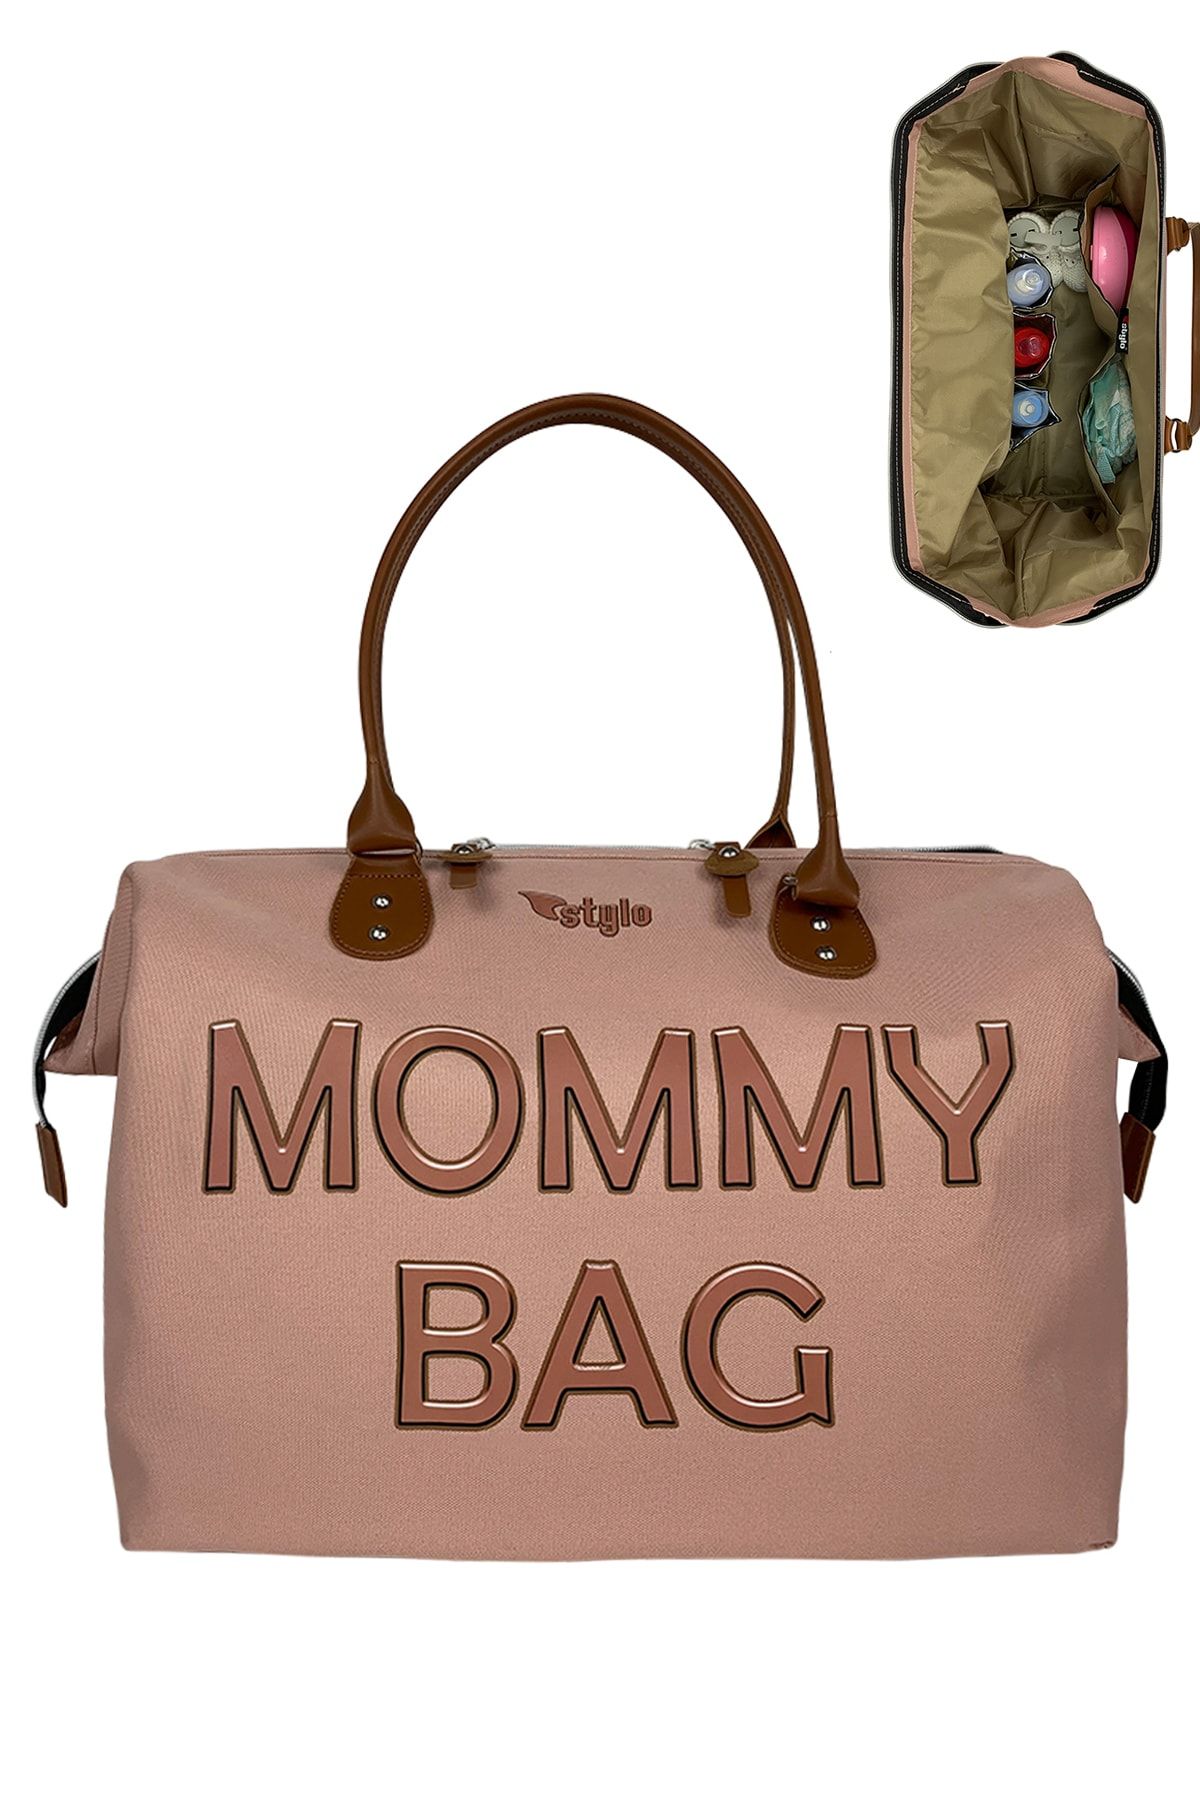 Stylo Mommy Bag 3d Anne Bebek Bakım Çantası - Pudra